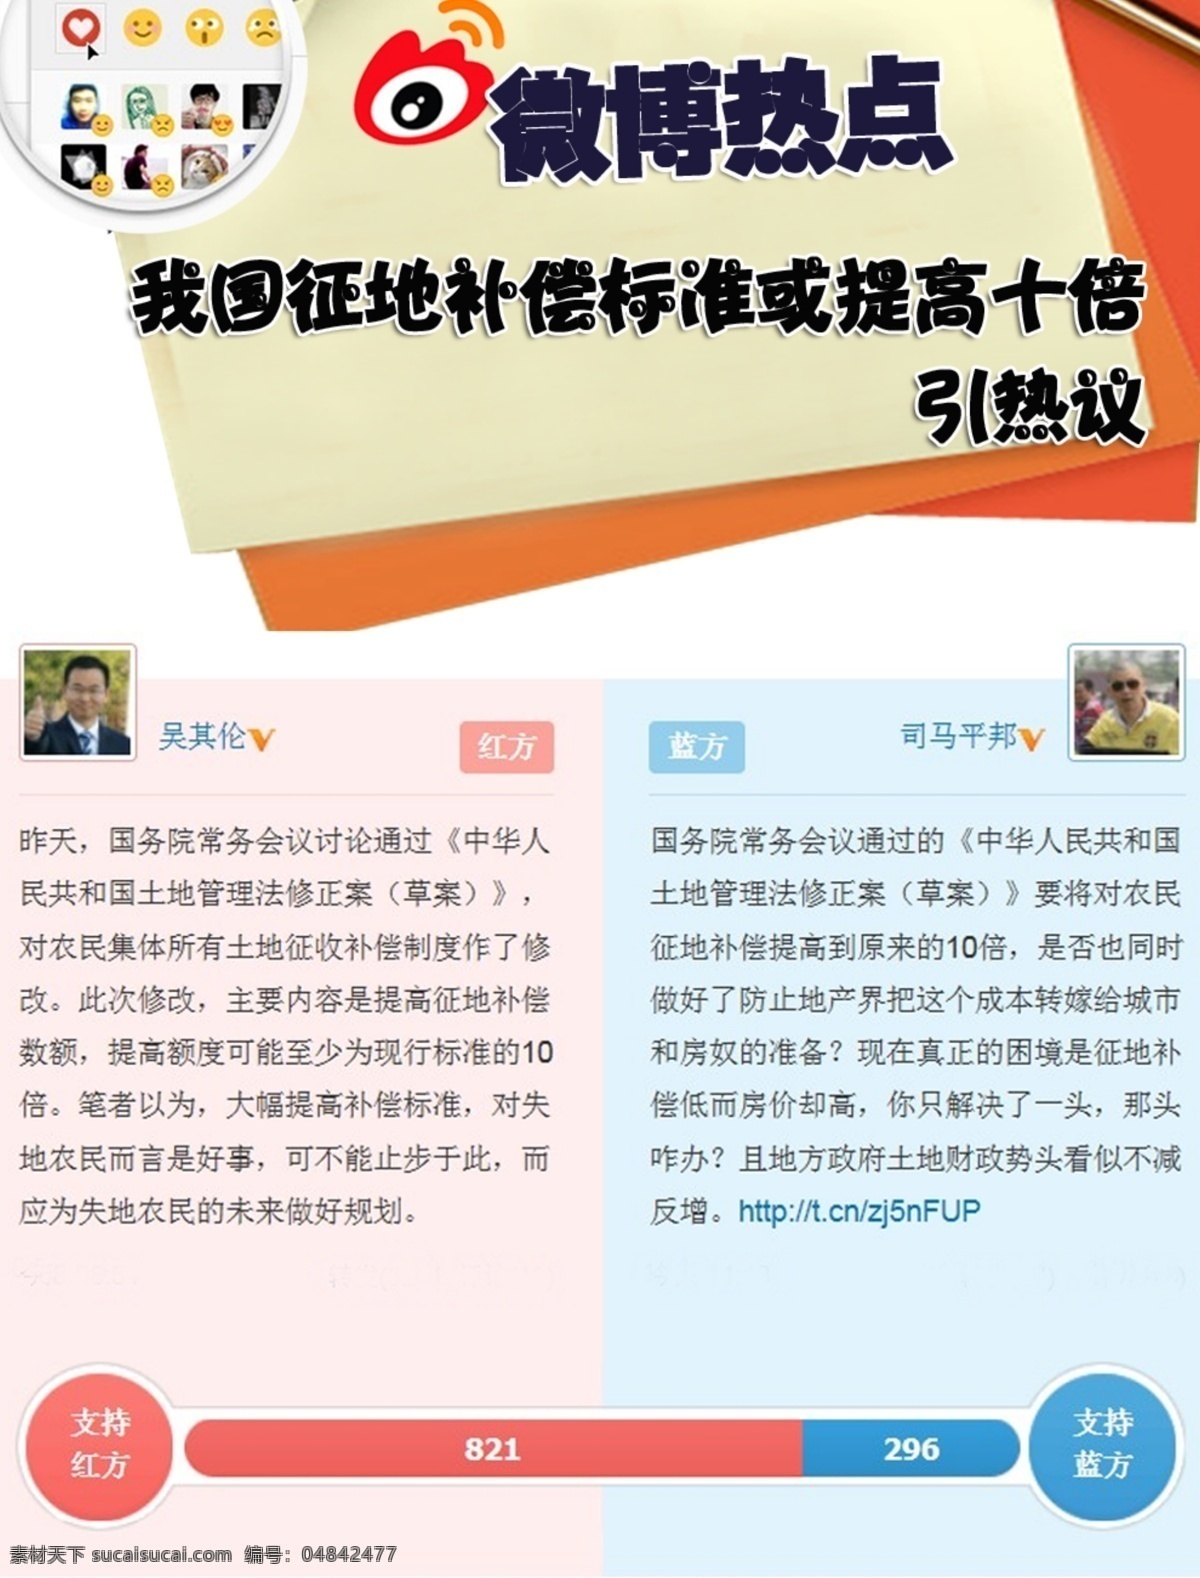 辩论 对比 简洁 网页模板 微博 新浪 源文件 中文模板 观点素材下载 观点模板下载 观点 网页素材